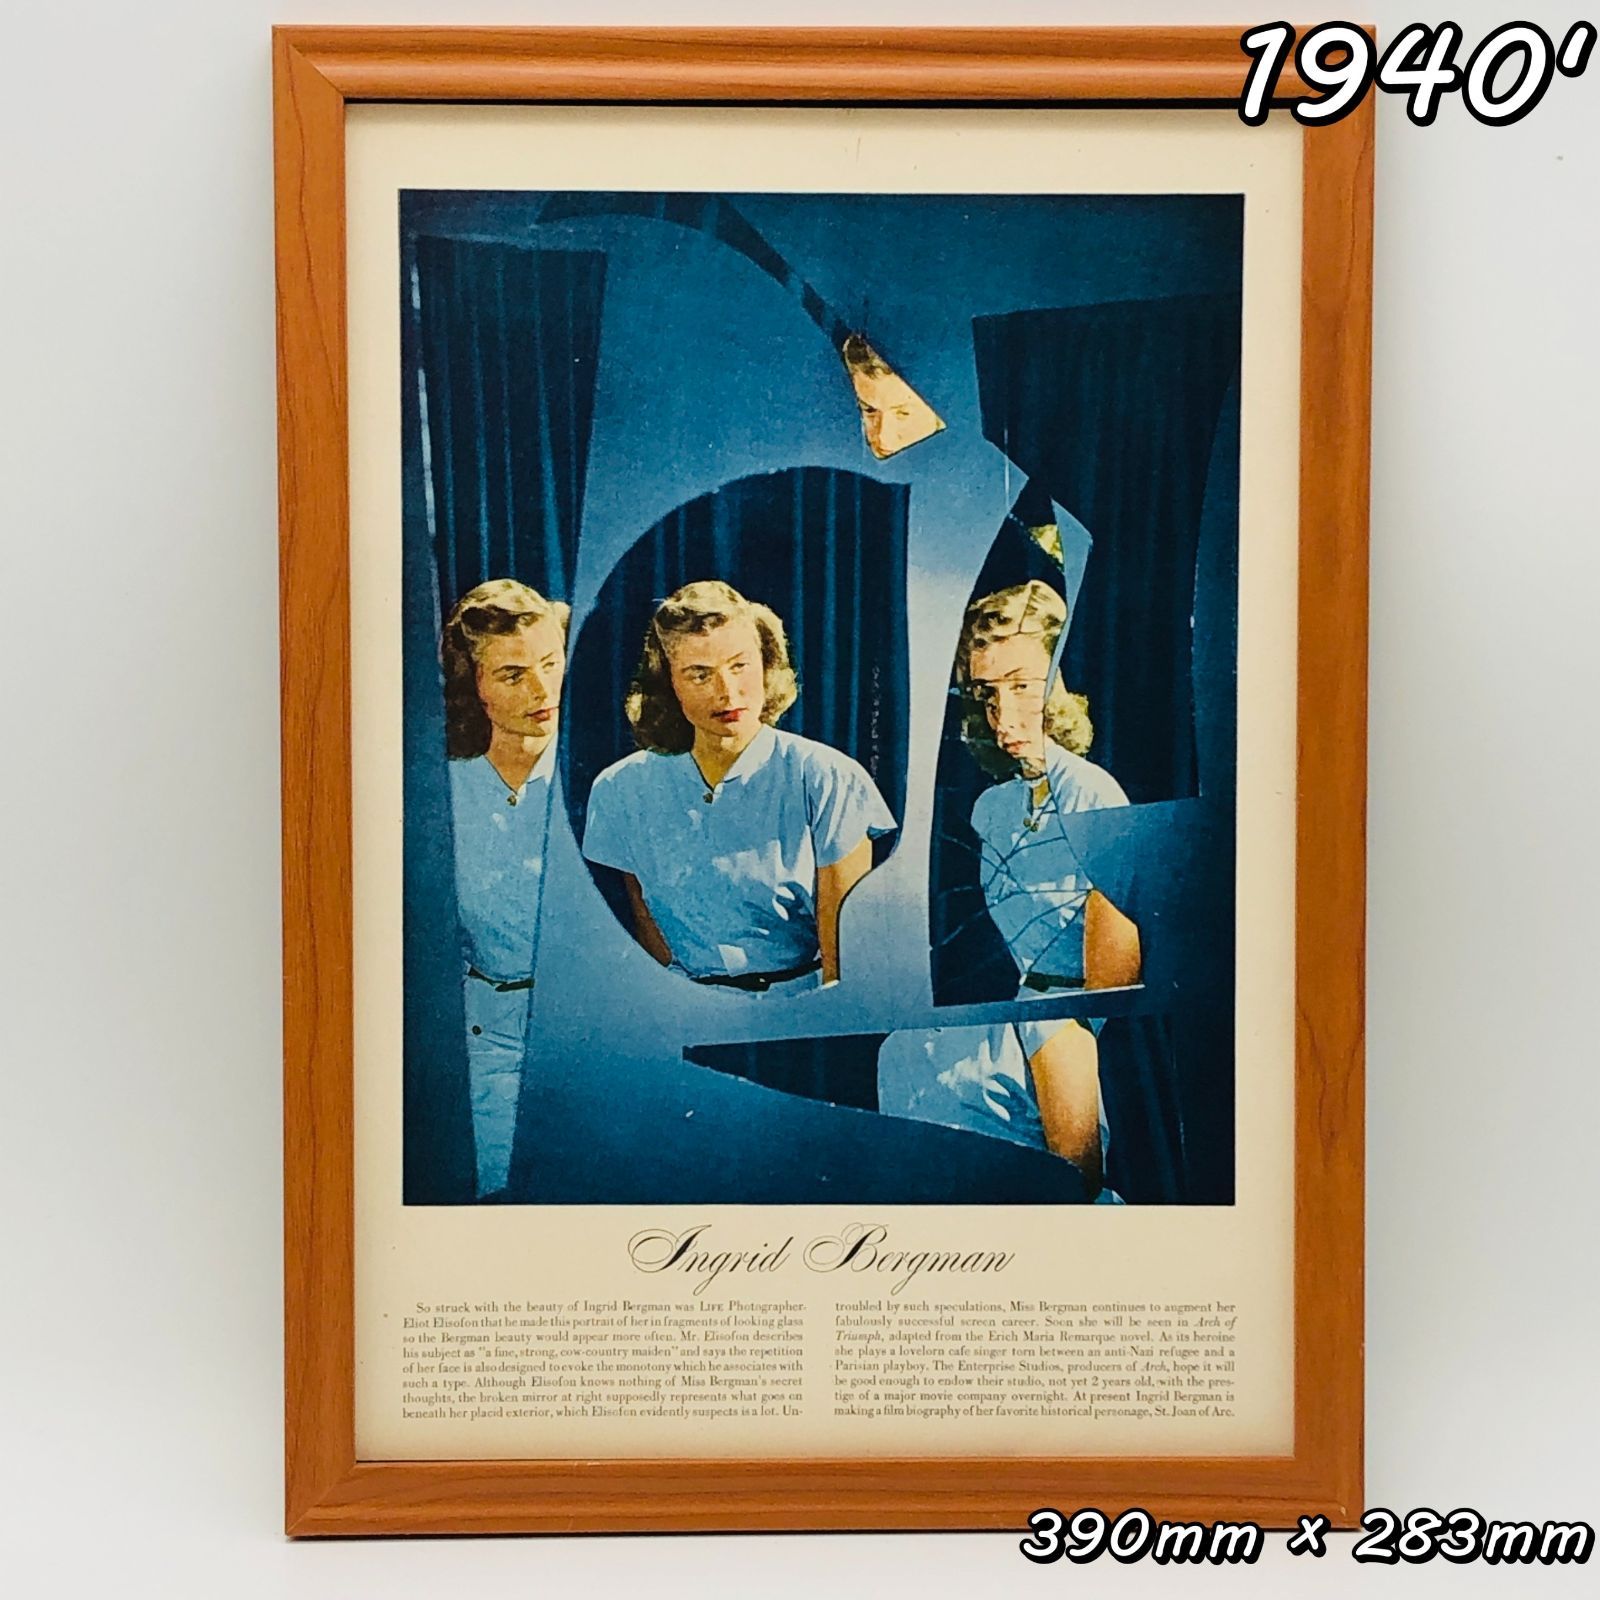 ビンテージ 広告 ポスター フレーム付 『 イングリッド・バーグマン 』 1940's ※当時物 オリジナル アメリカ 輸入雑貨 ヴィンテージ  アドバタイジング レトロ ( AZ1613 ) - メルカリ